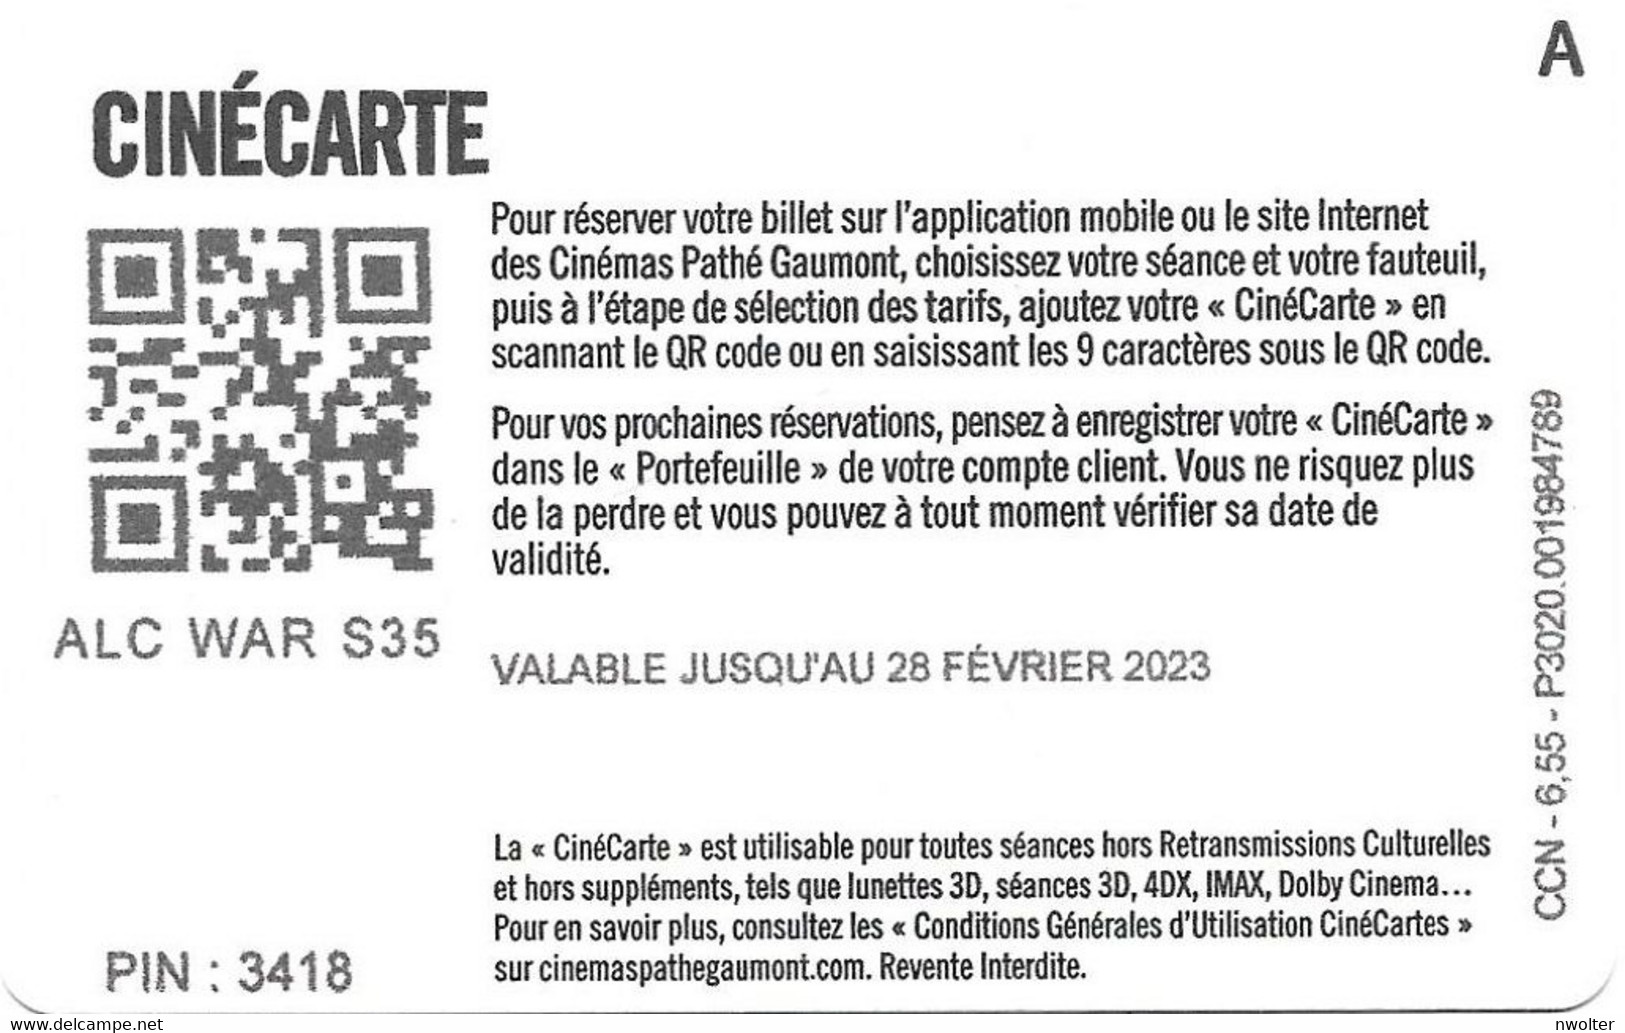 @+ CINECARTE Pathé Gaumont - 1 Place - Verso Lettre A (28/02/2023) - Cinécartes